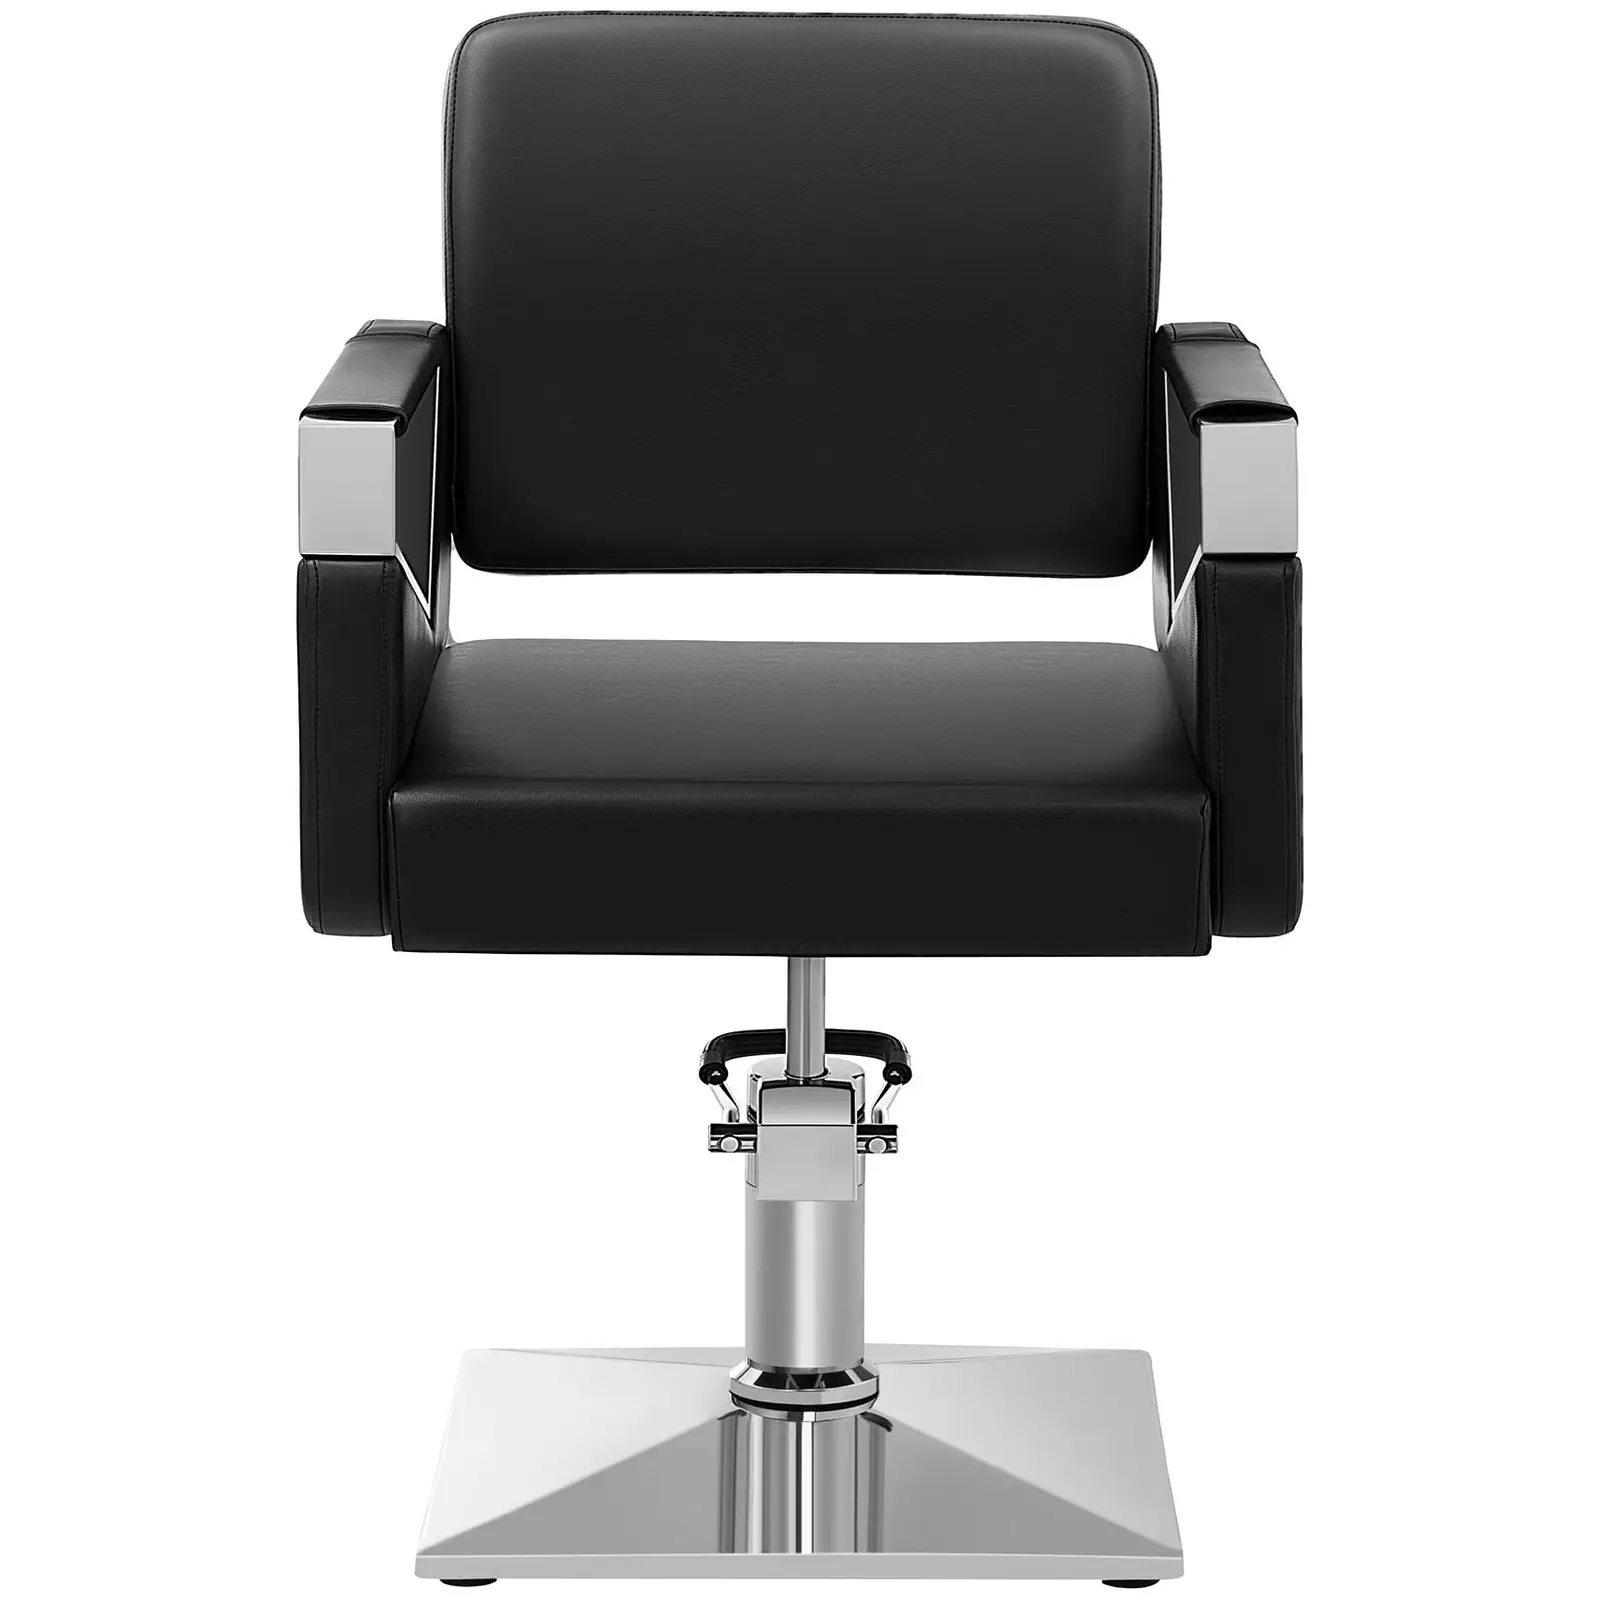 Fodrász szék - 445–550 mm - 200 kg - Fekete